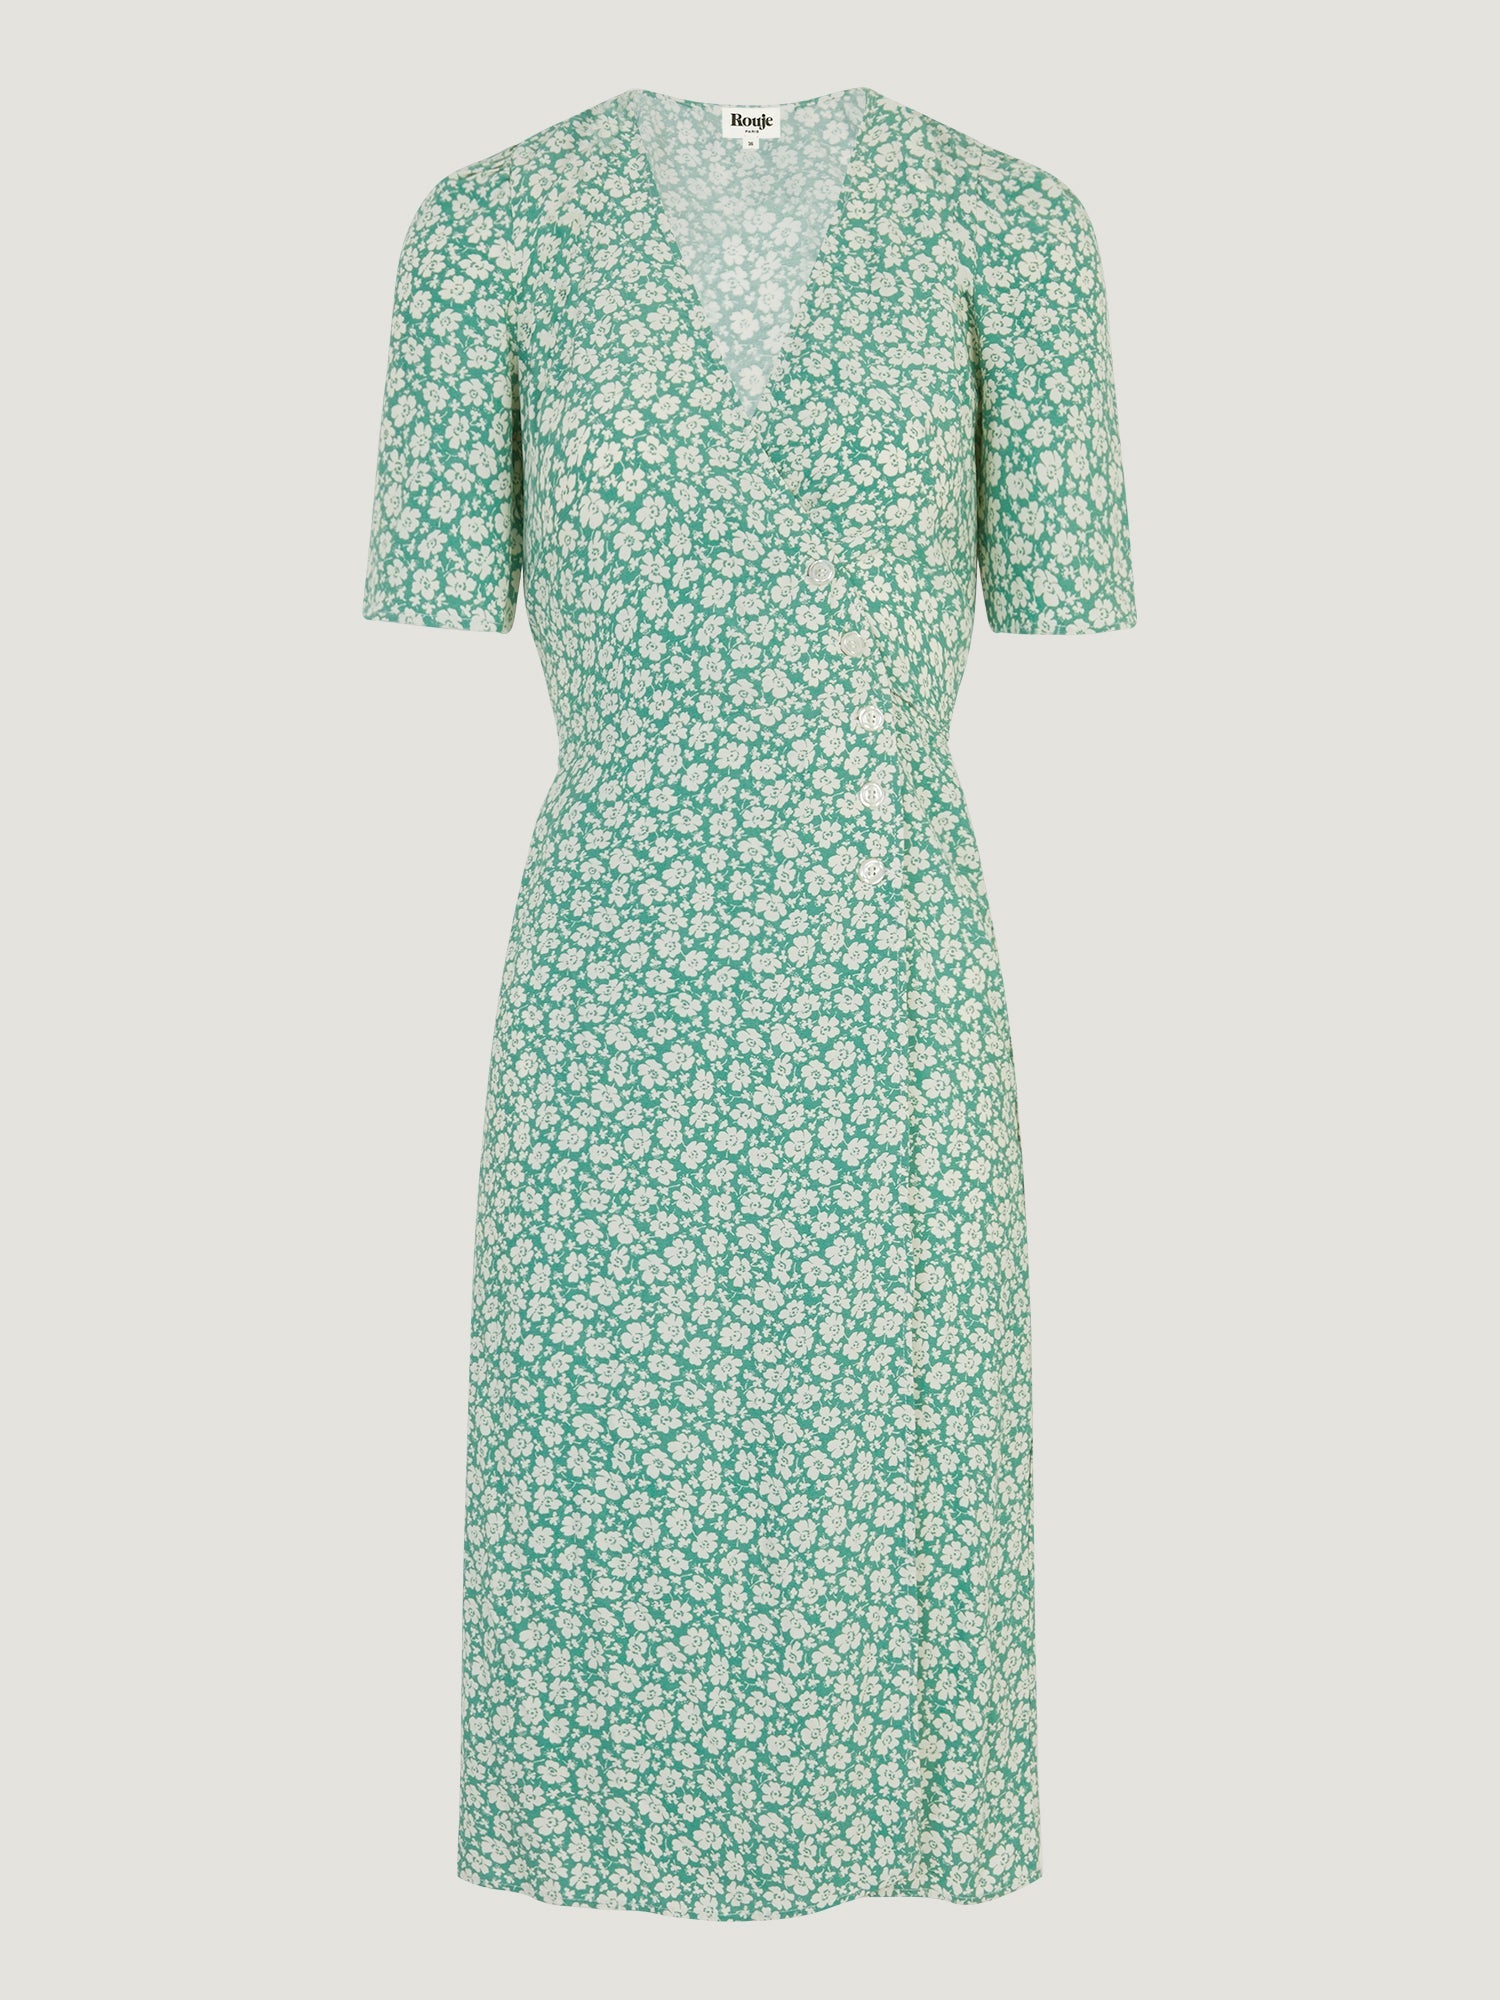 Green floral midi wrap dress | Rouje • Rouje Paris